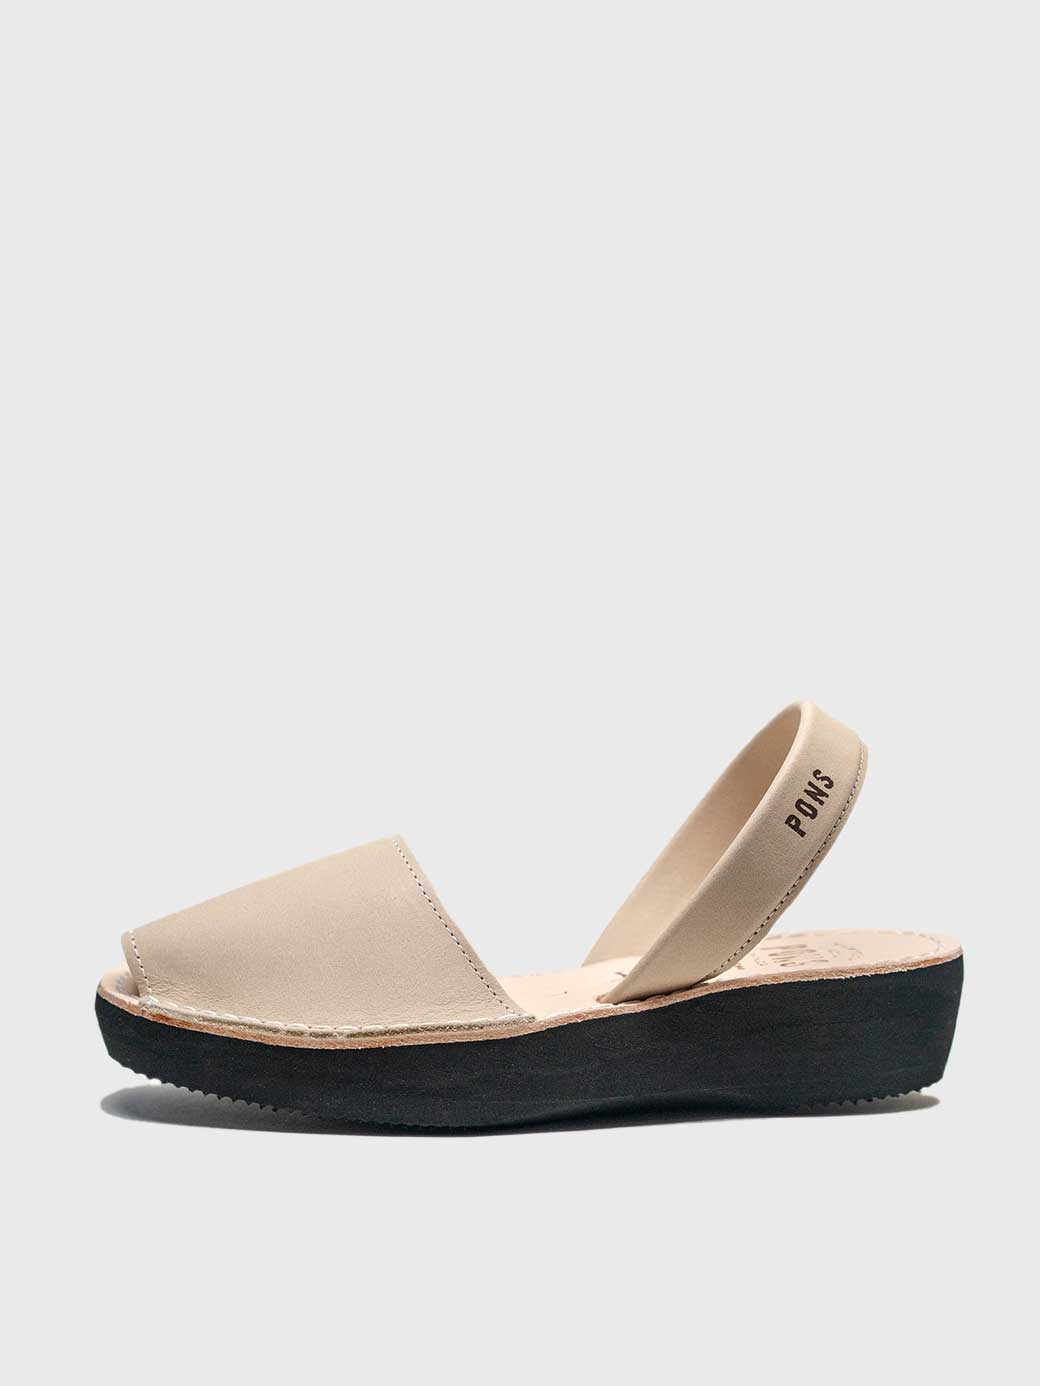 Platform Sandals by Pons, everyday essentials